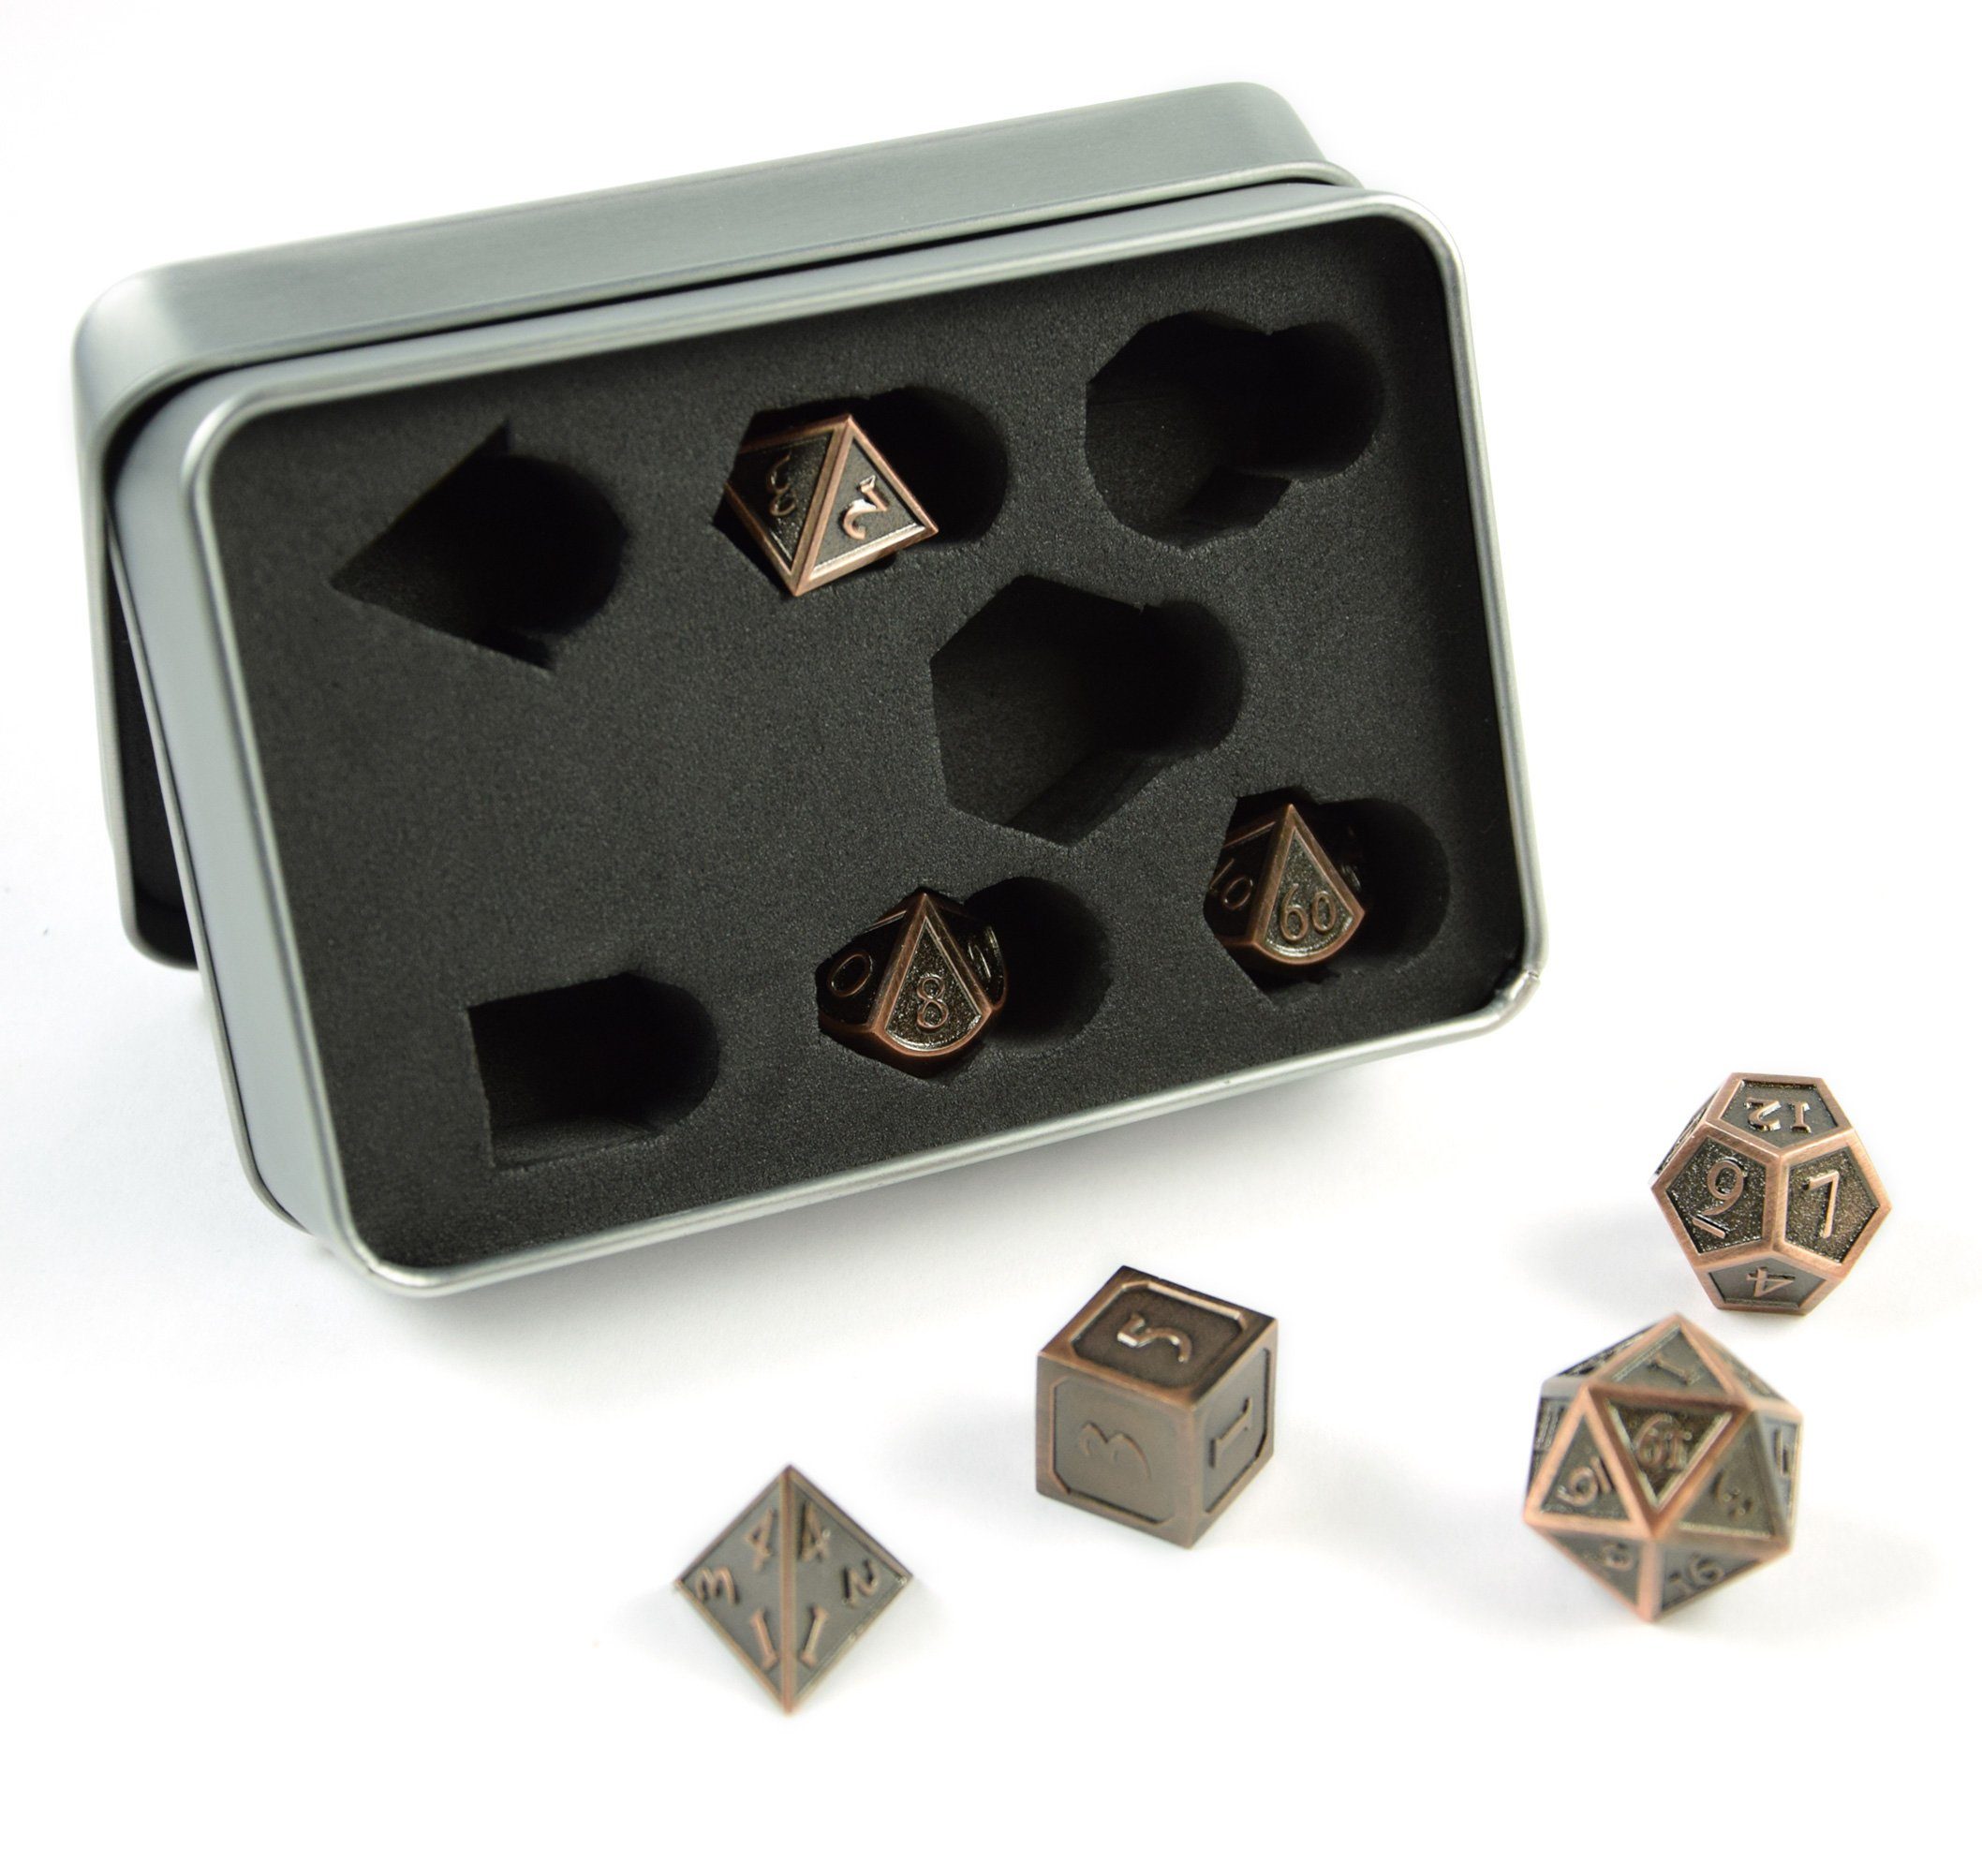 SHIBBY Spielesammlung, 7 polyedrische Metall-DND-Würfel in Steampunk Optik, inkl. Aufbewahrungsbox